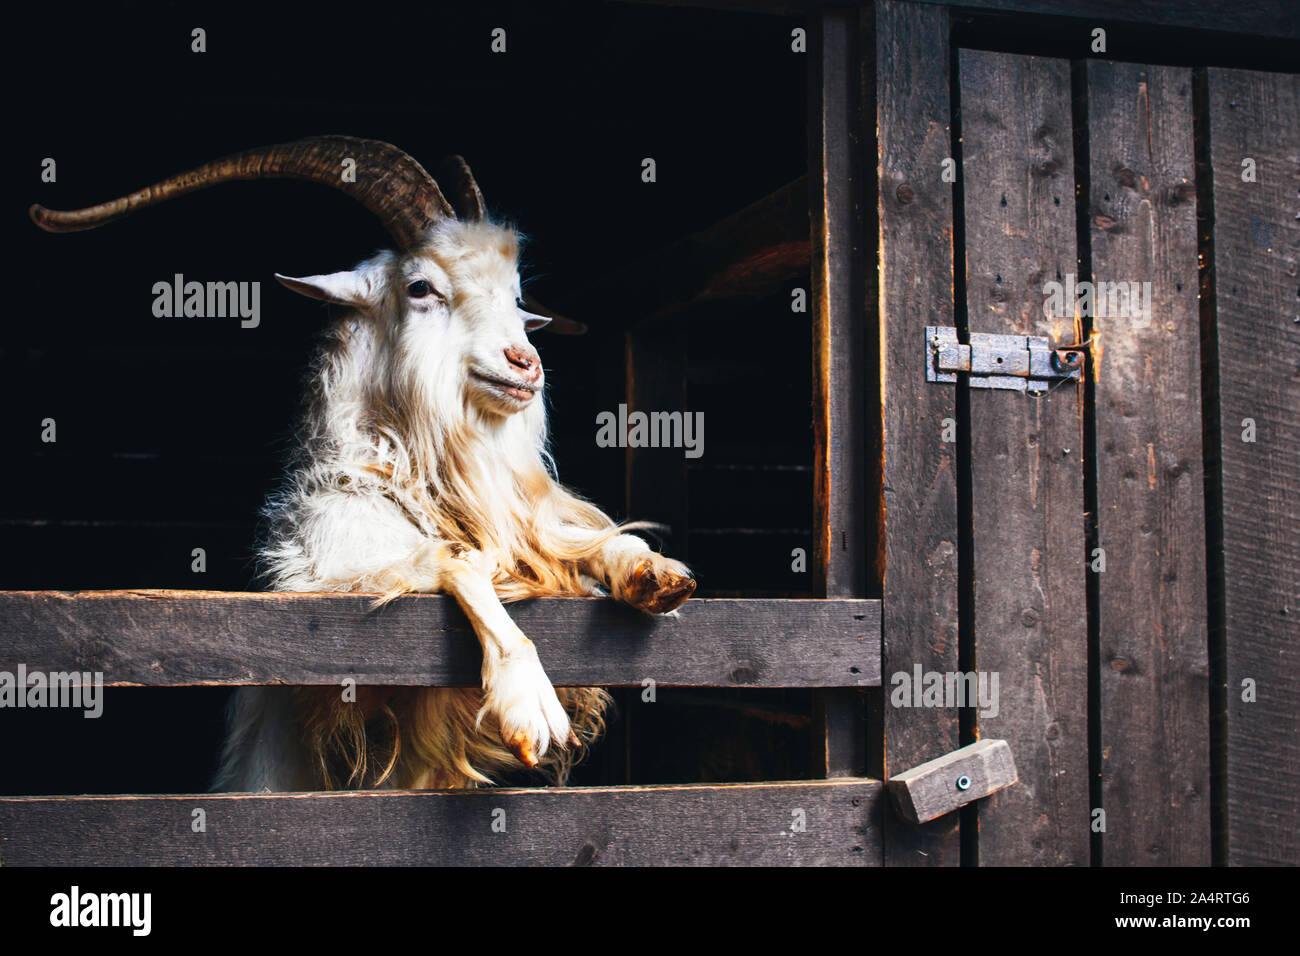 Molto bella capra bianca con lunghe corna e la barba, vive in una fattoria su sfondo scuro. Foto Stock